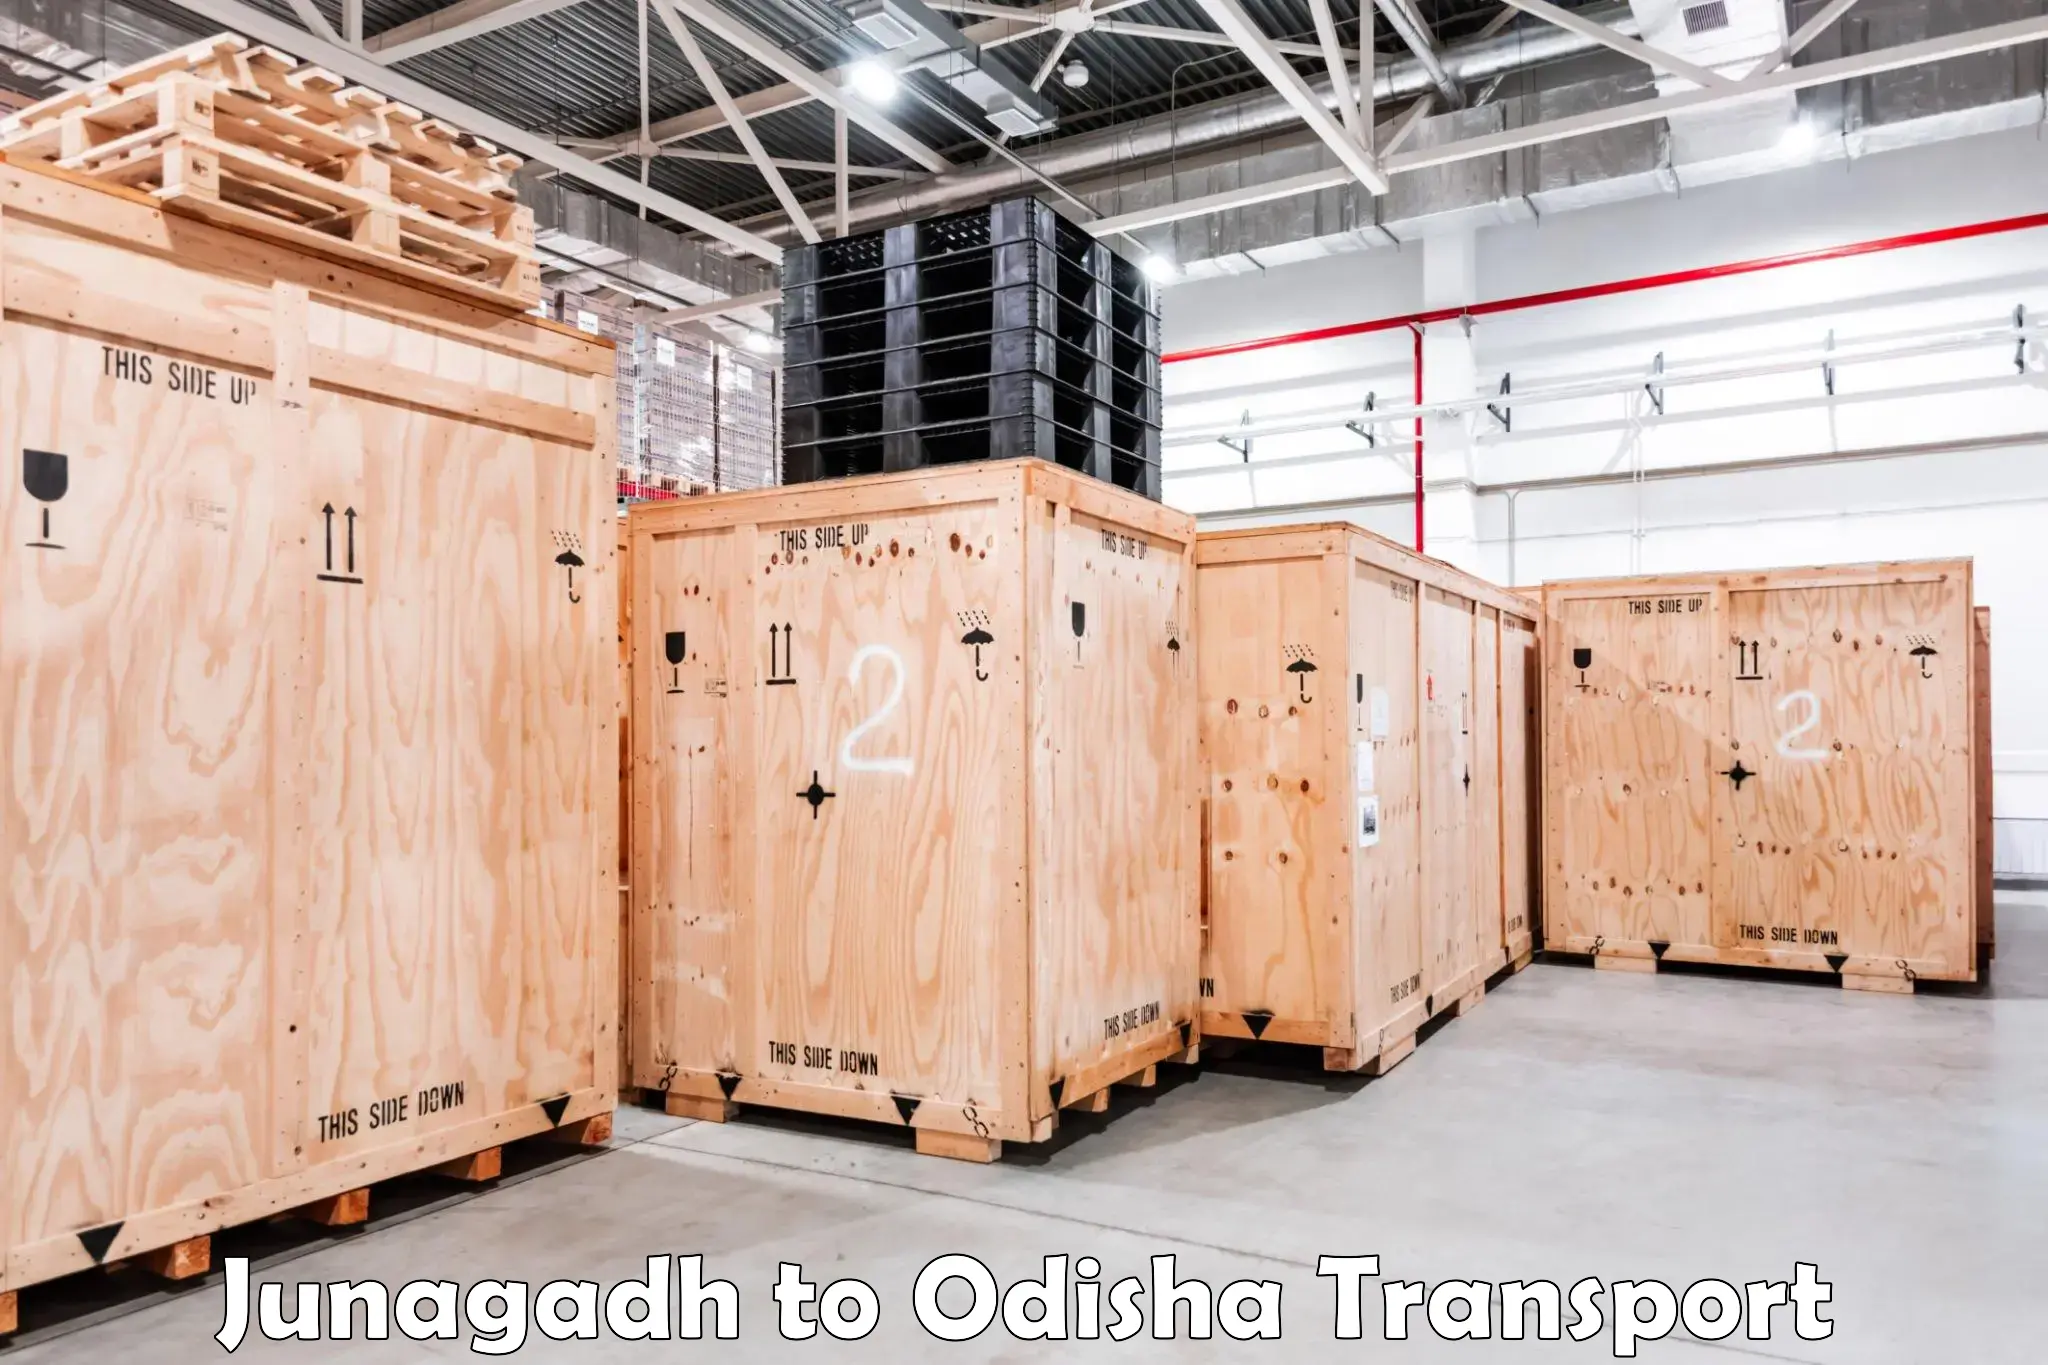 Furniture transport service Junagadh to Kuchinda